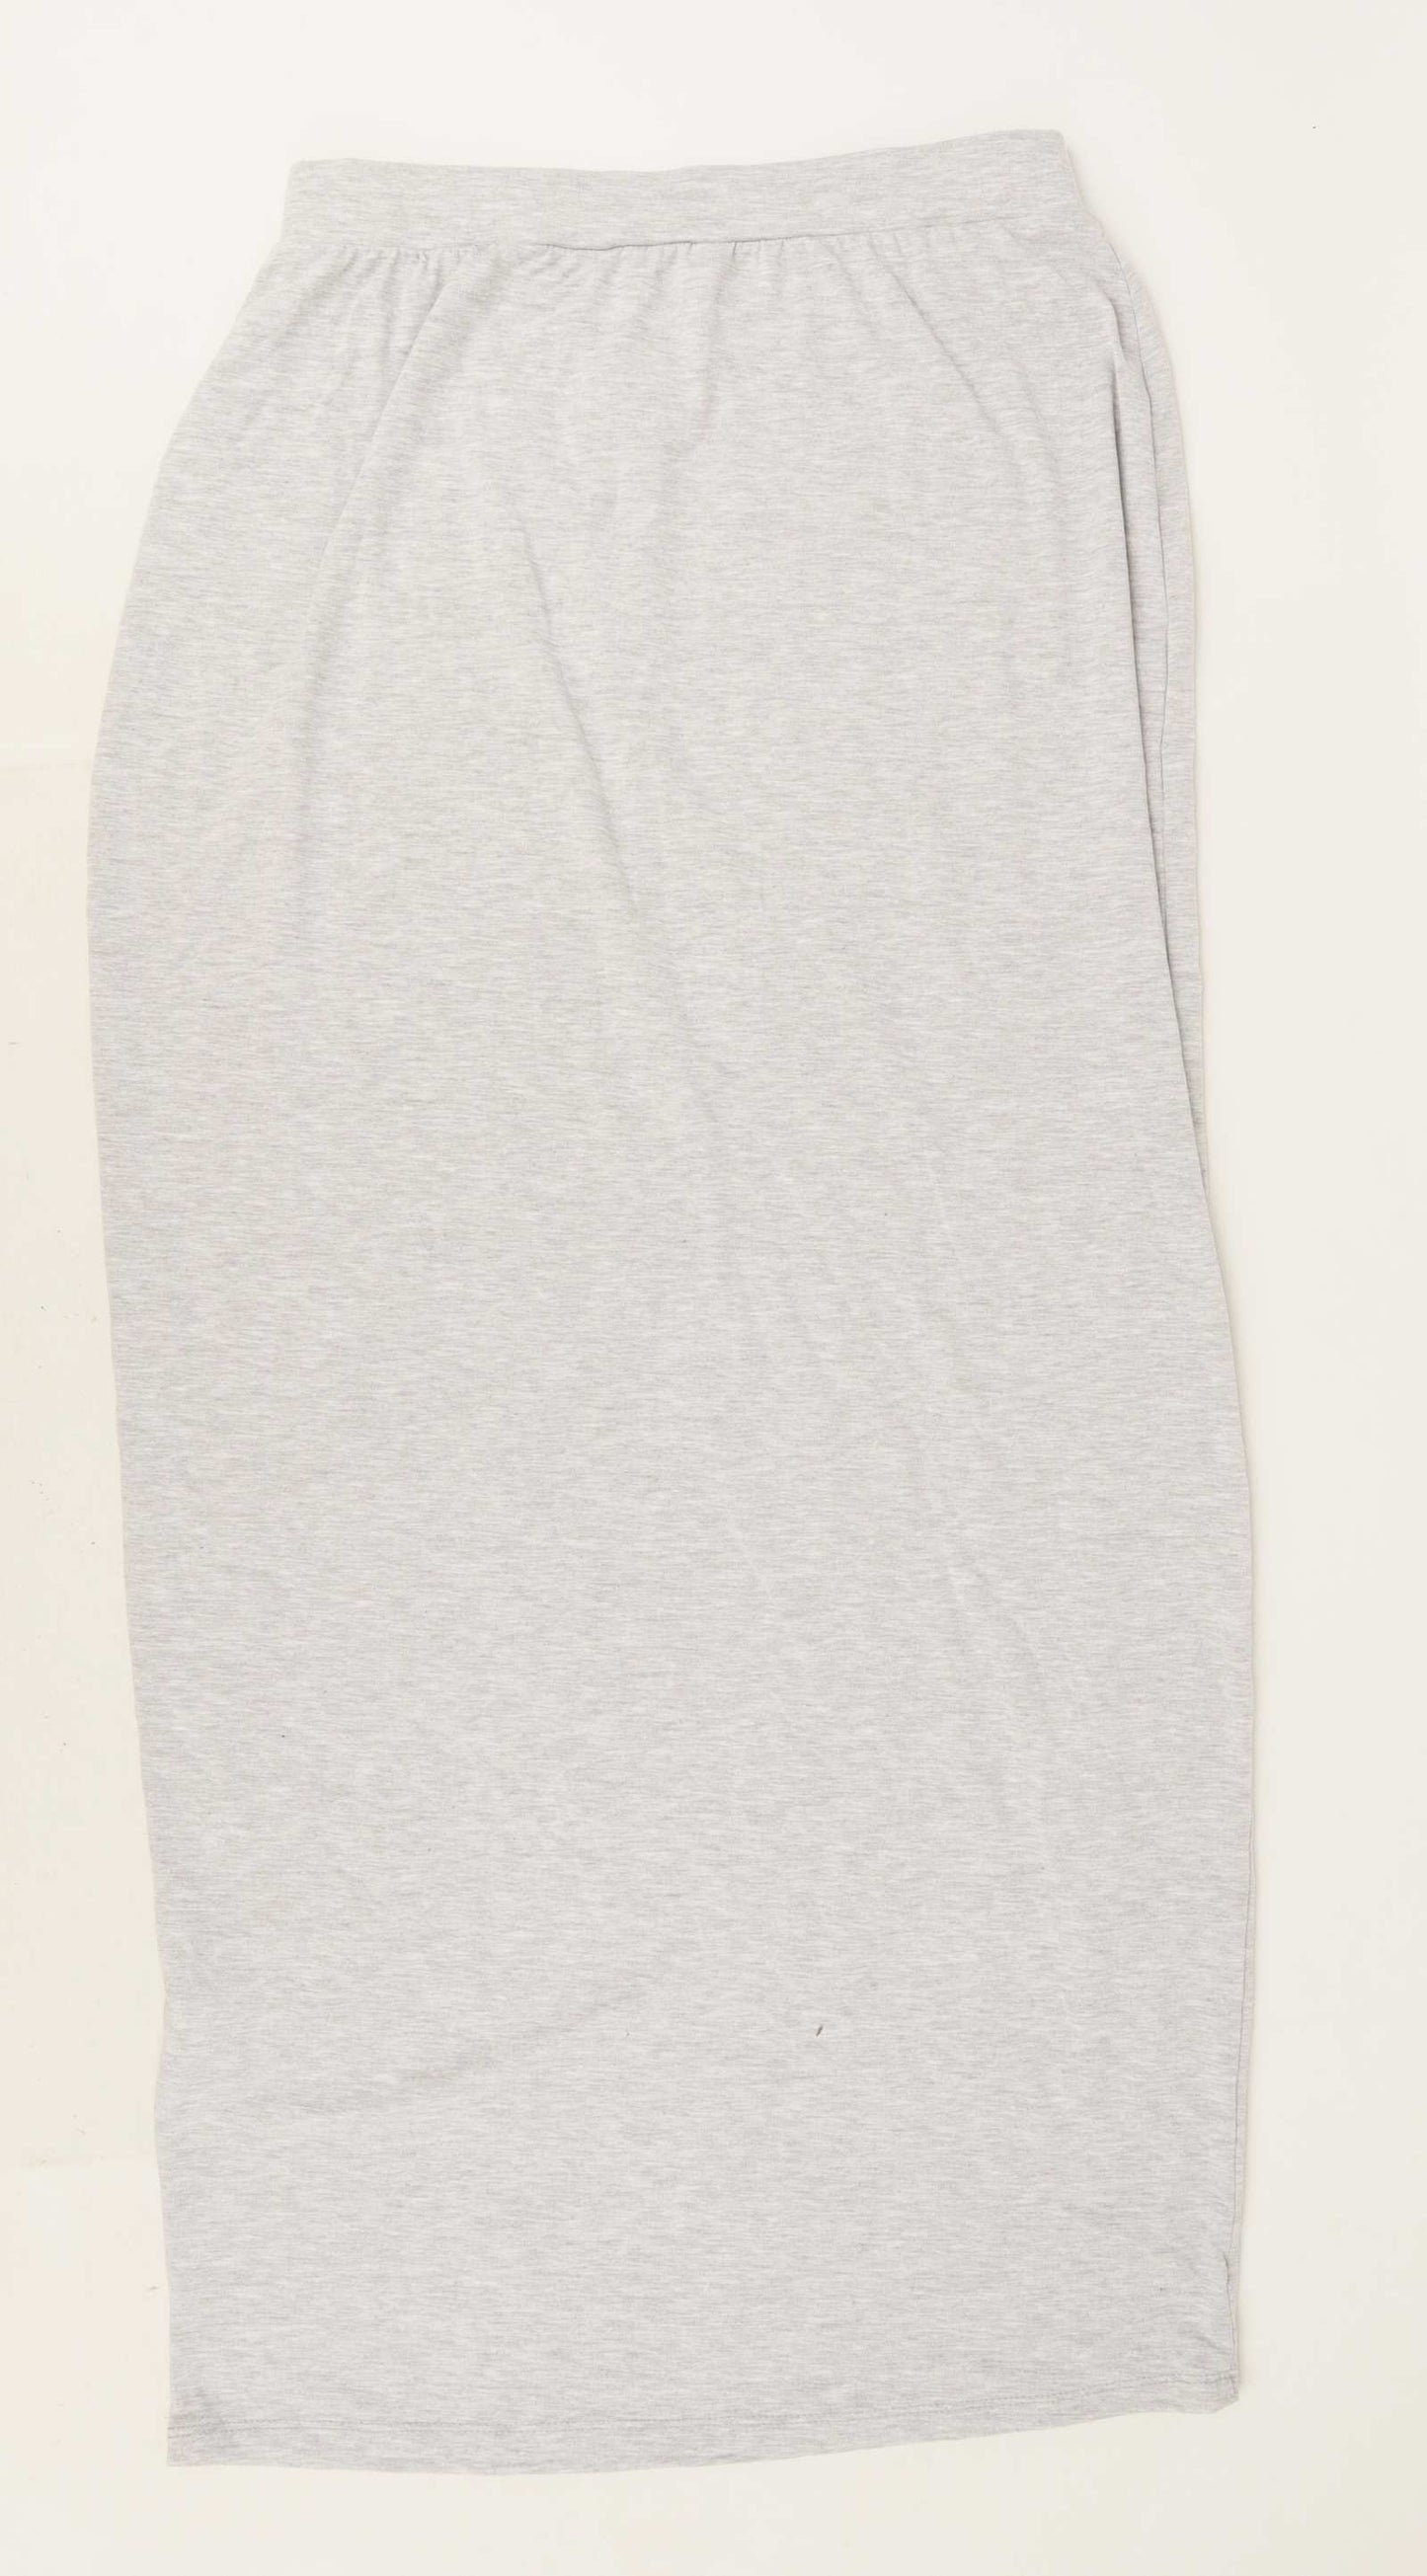 Be You Womens Size 12 Grey Elasticated Waist Skirt (Regular)